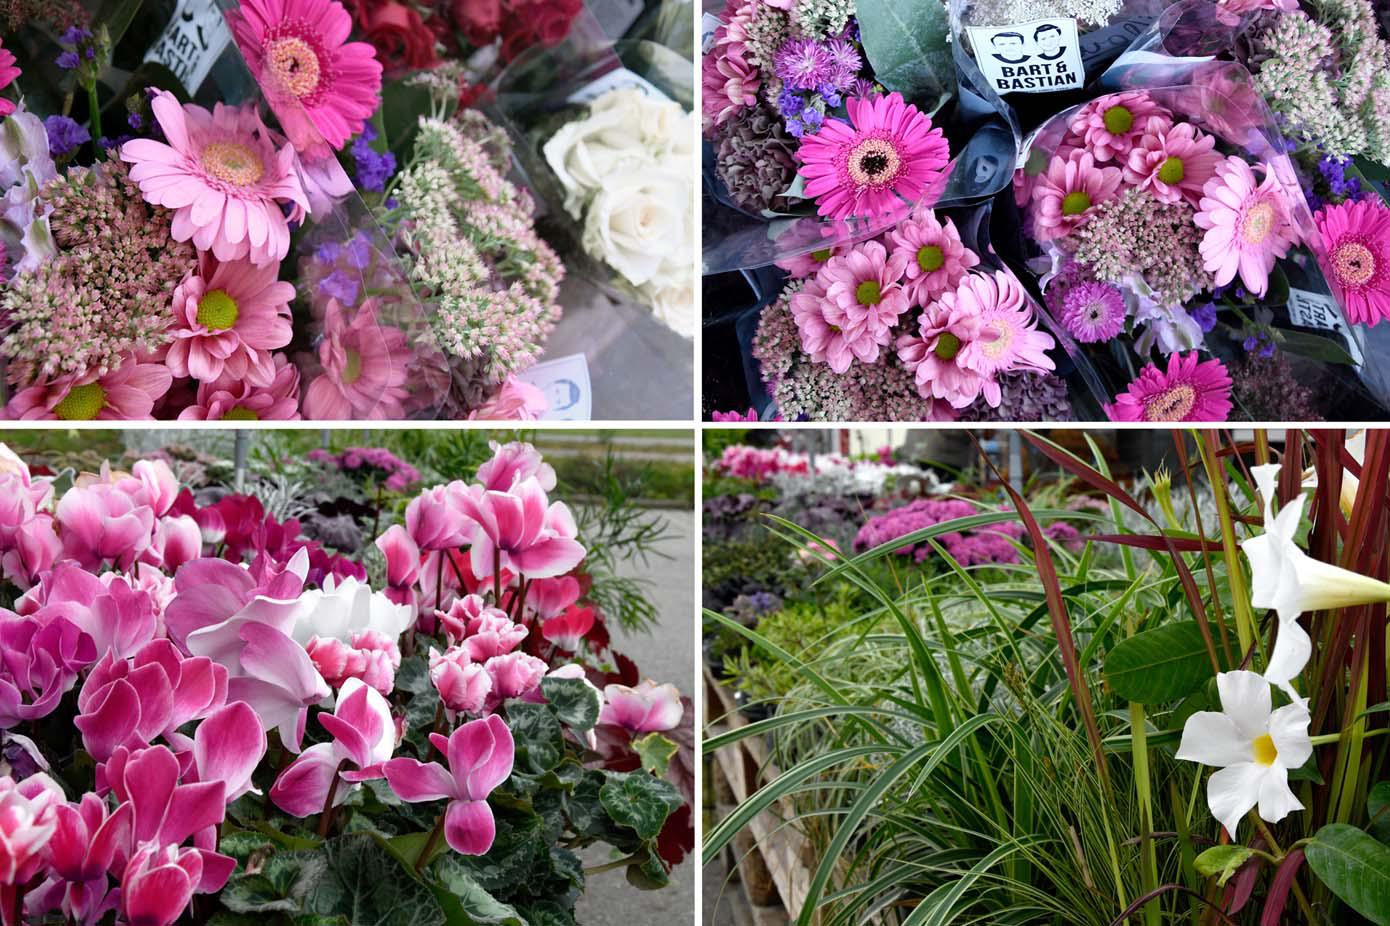 FLORISTIK
Holen Sie sich den Sommer ins Haus! Besuchen Sie unsere Floristik im Vorkassenbereich und lassen Sie sich mitreißen von den Farben und Düften der Blumen und Pflanzen.